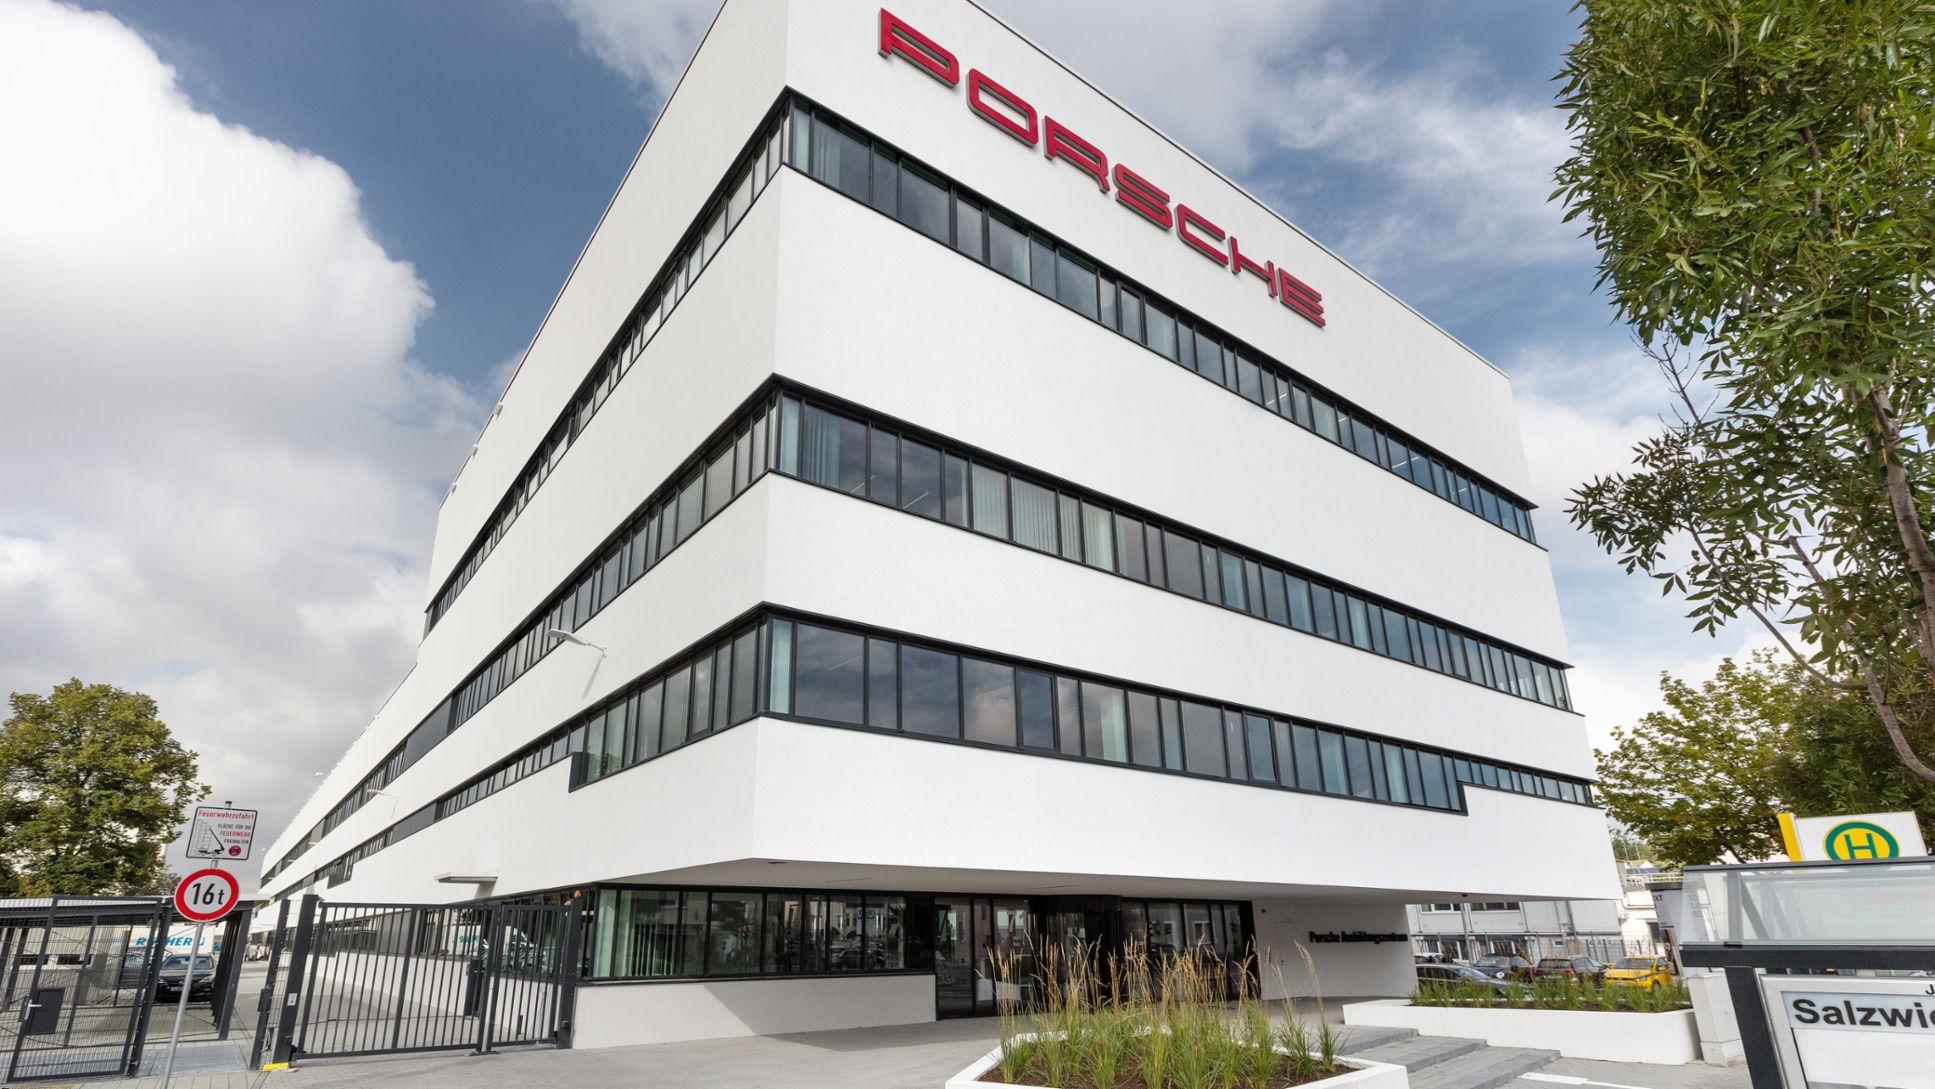 Training Centre, Zuffenhausen, 2015, Porsche AG